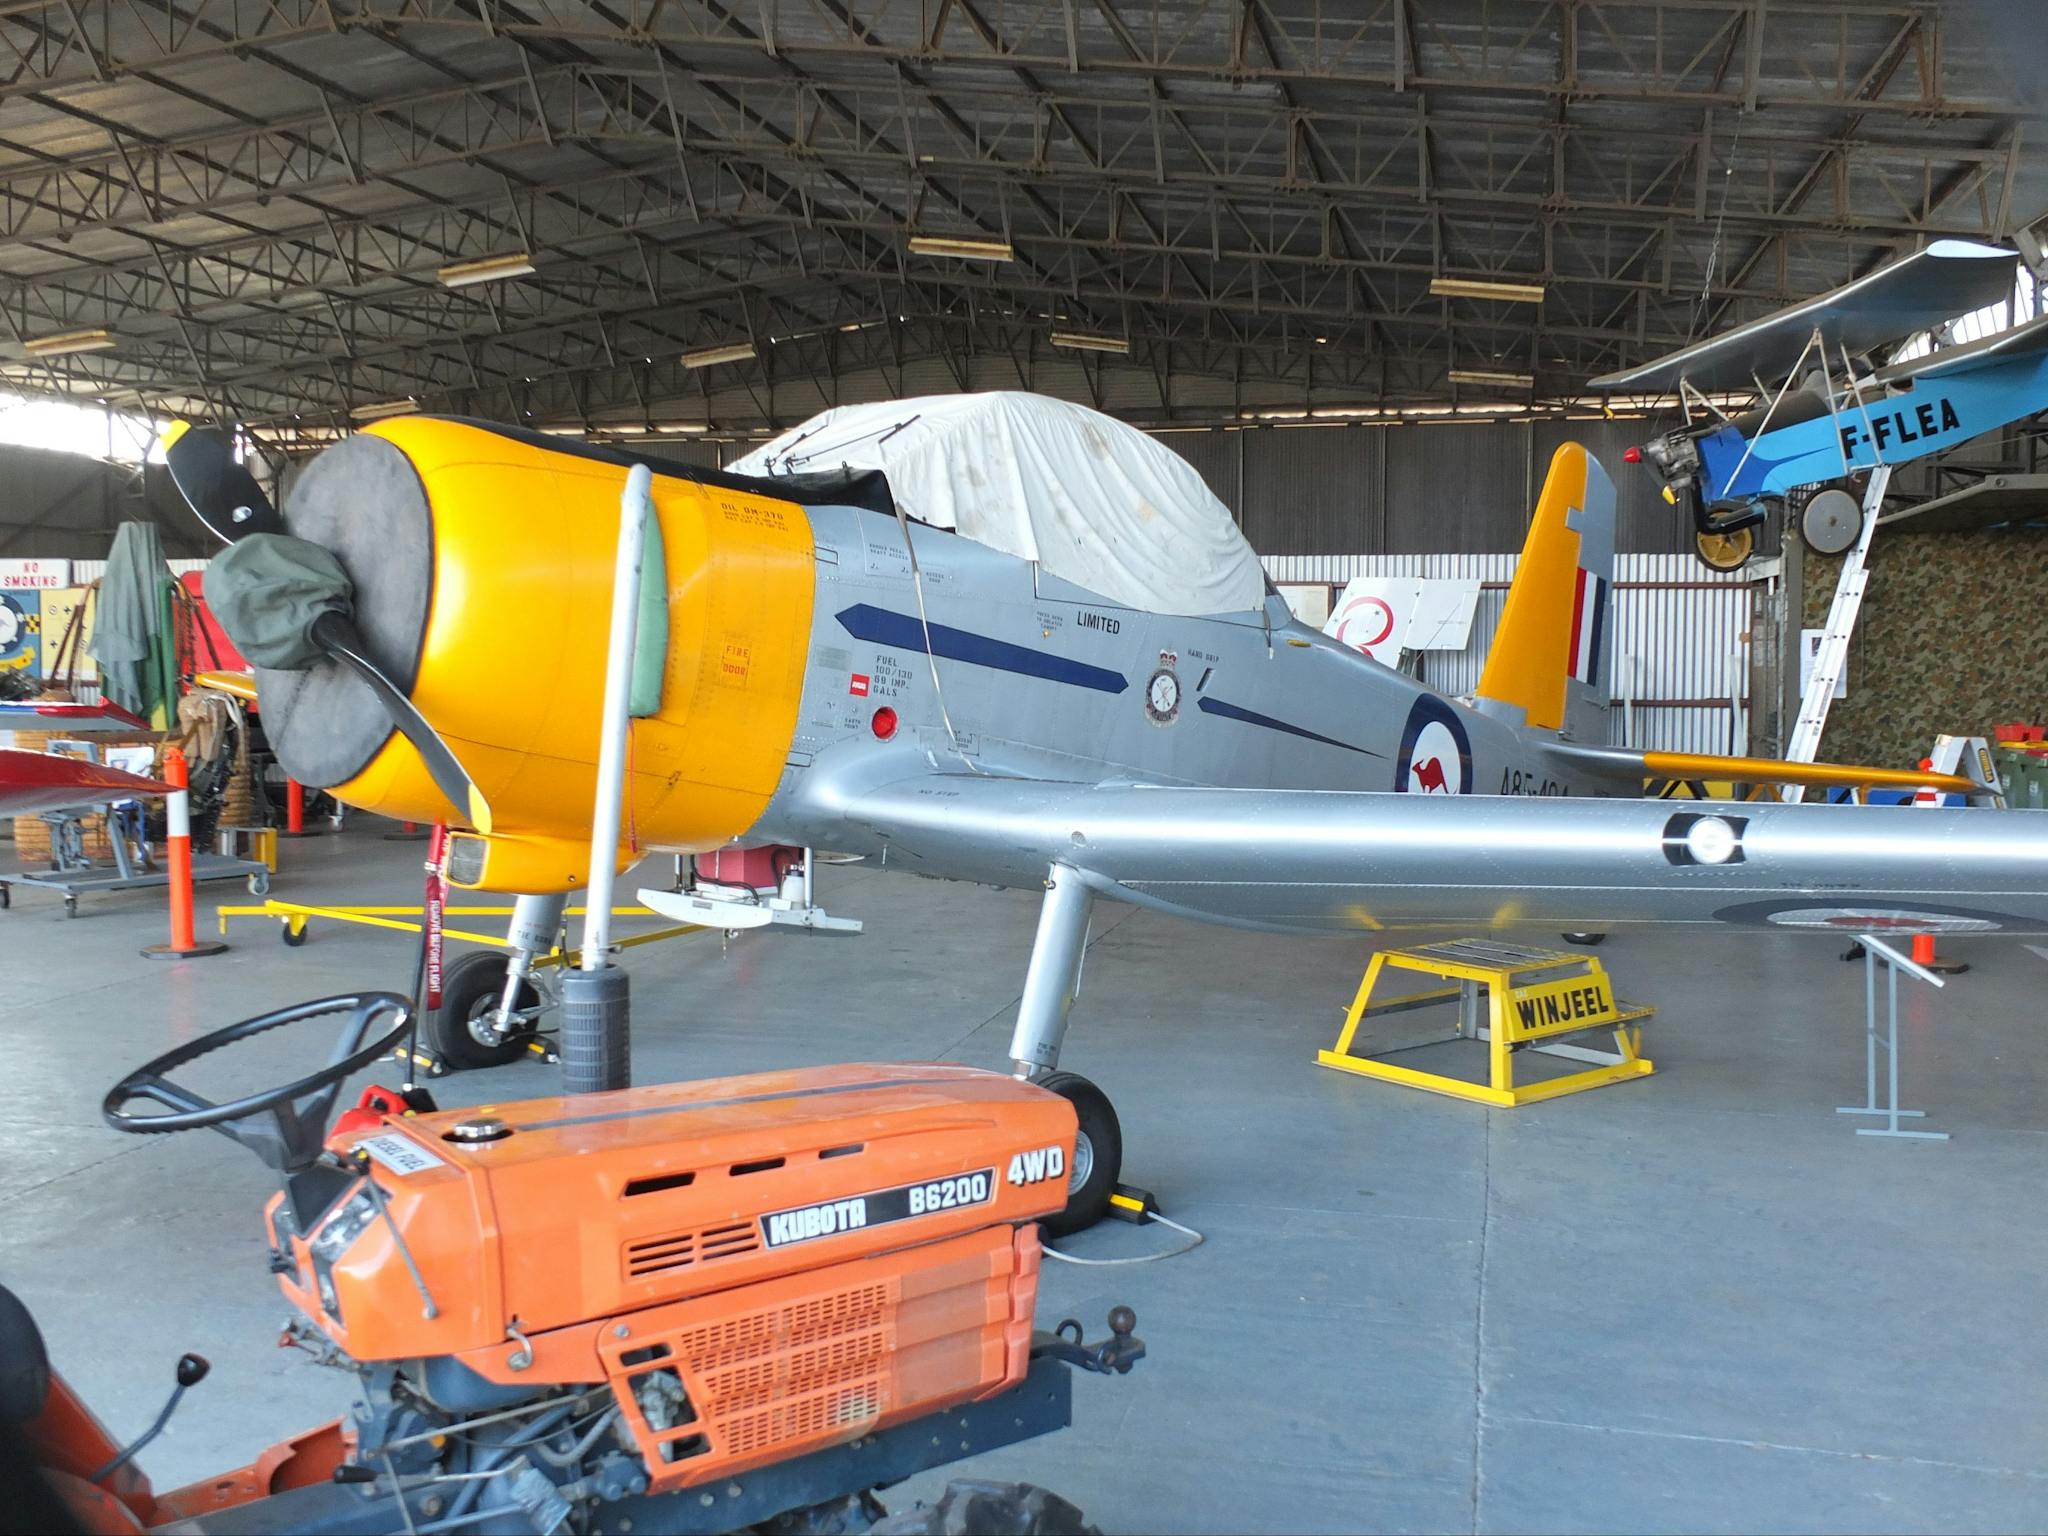 Benalla Aviation Museum